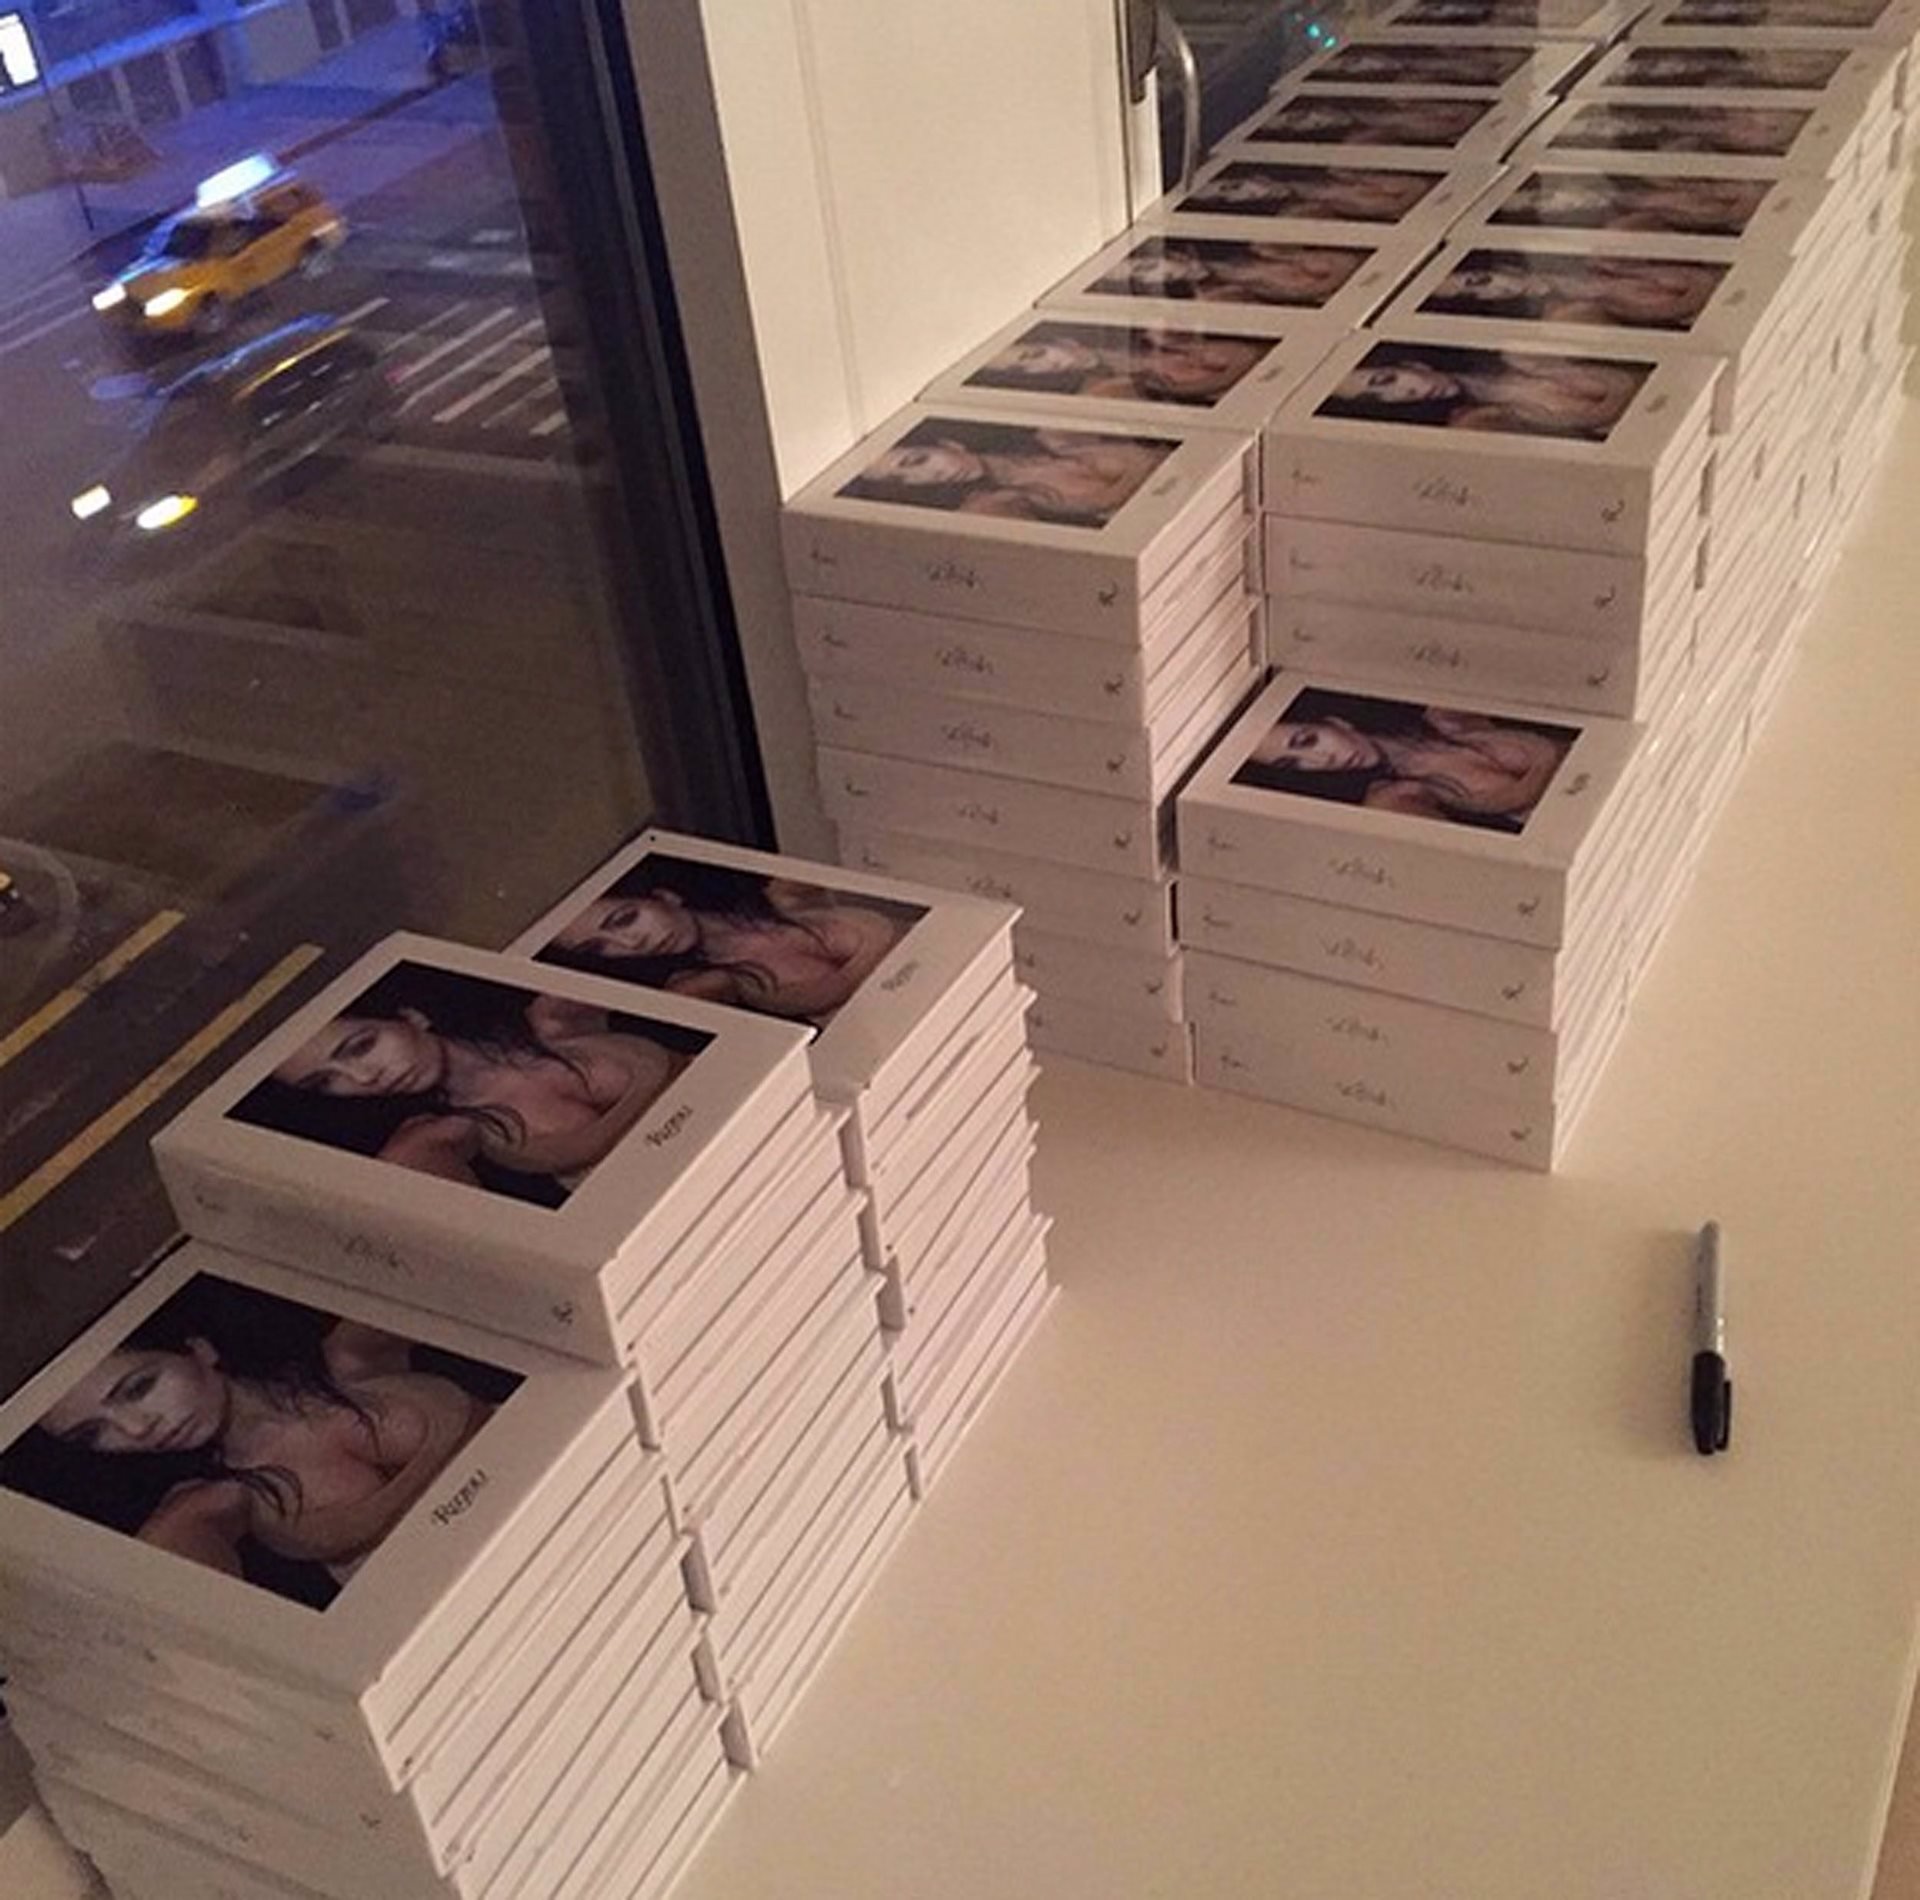 Ejemplares apilados del libro Selfish de Kim Kardashian